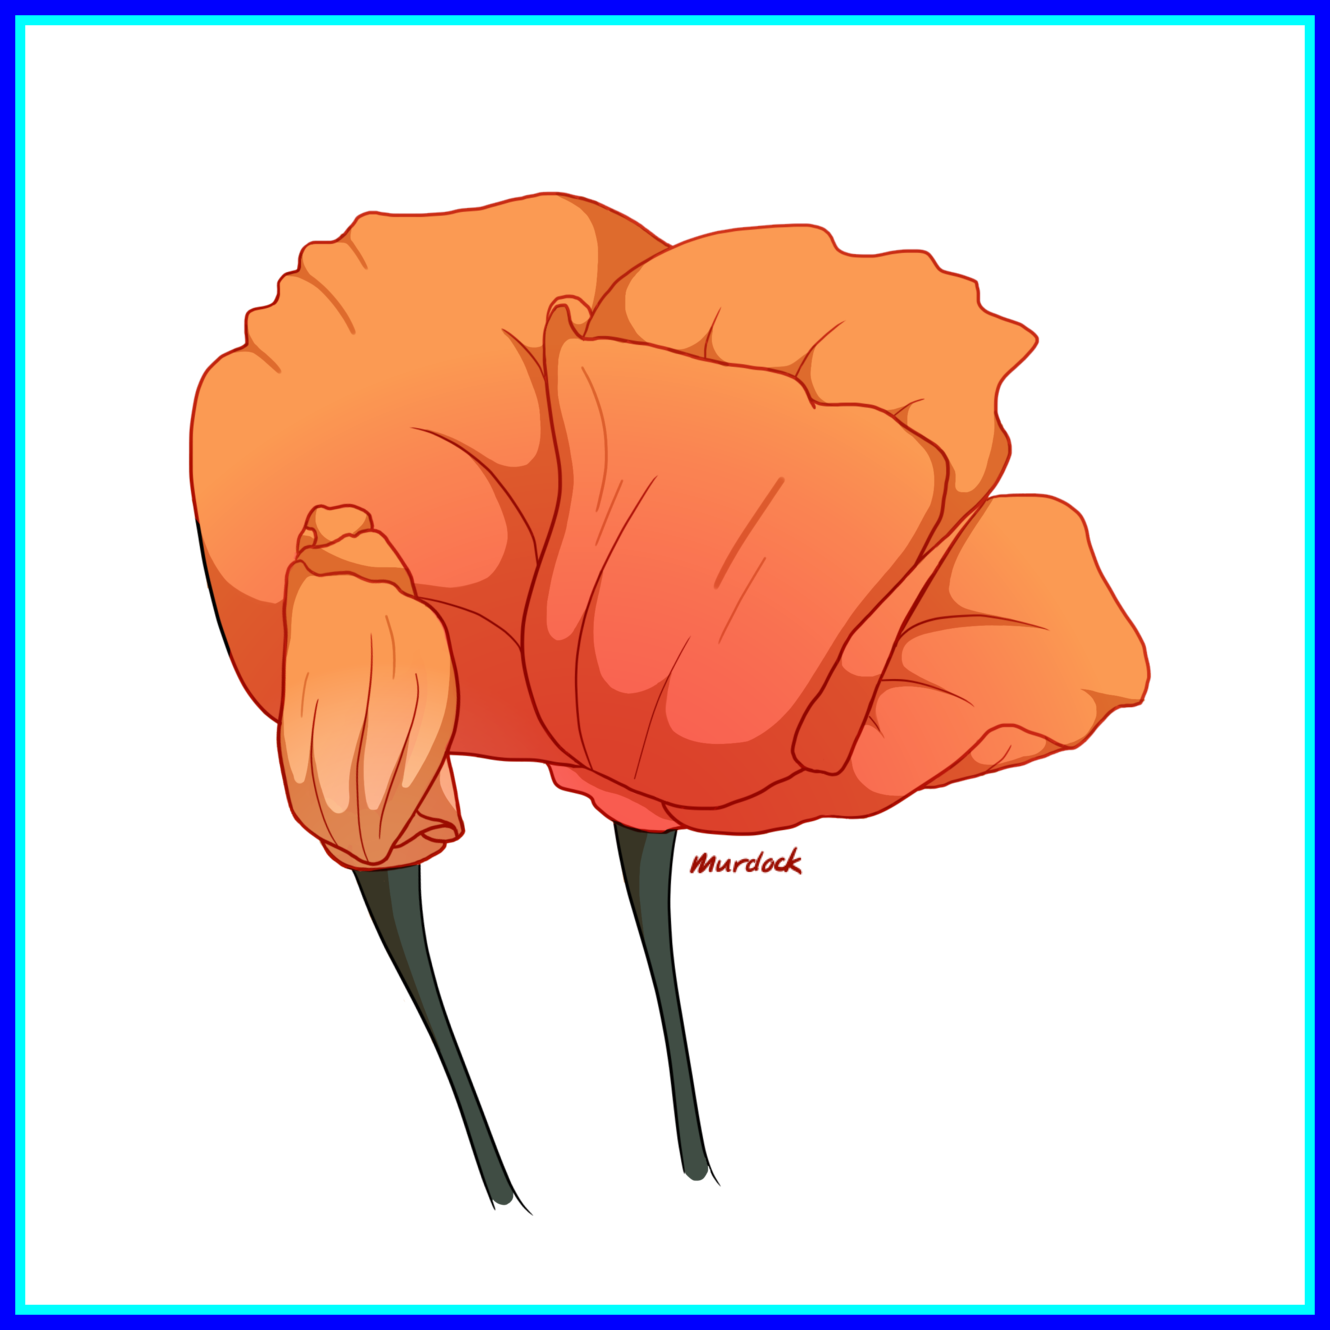 Best Poppy Art Pink Tumblr Of Red Carnation Flower - Poppy (1330x1330)